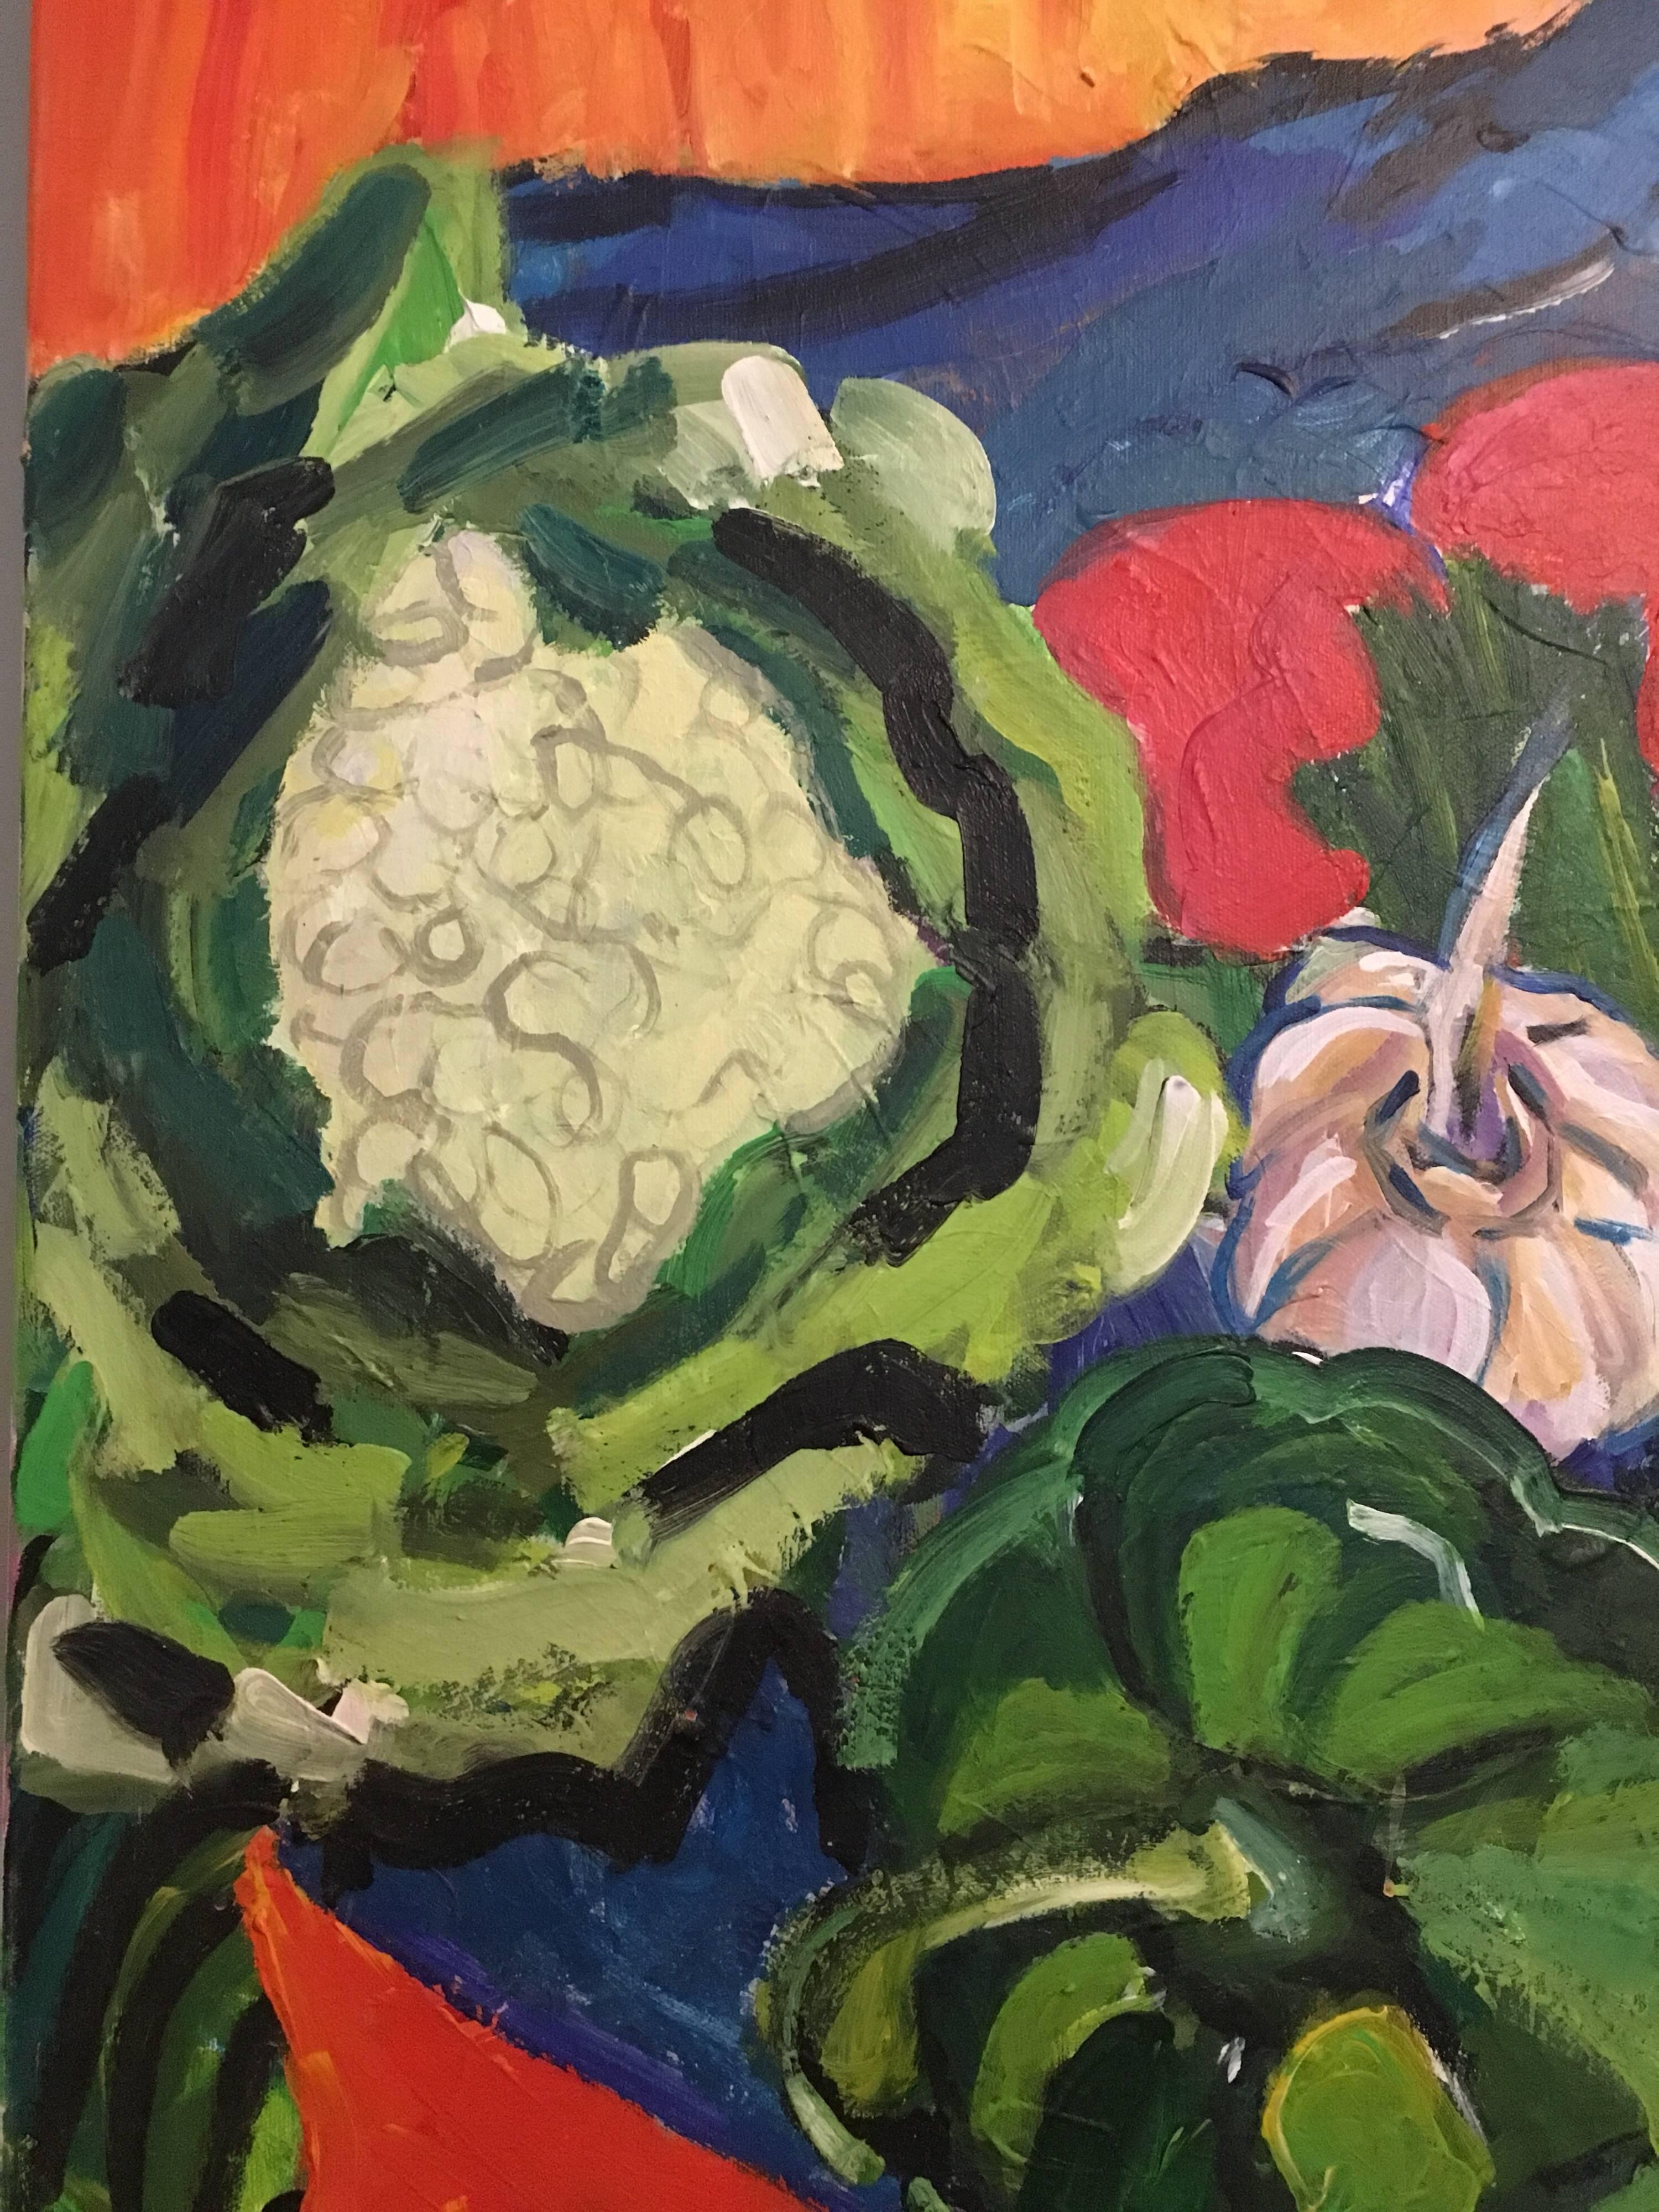 Garten Gemüse, Stillleben, leuchtende Farben, britischer Künstler (Impressionismus), Painting, von Pamela Cawley